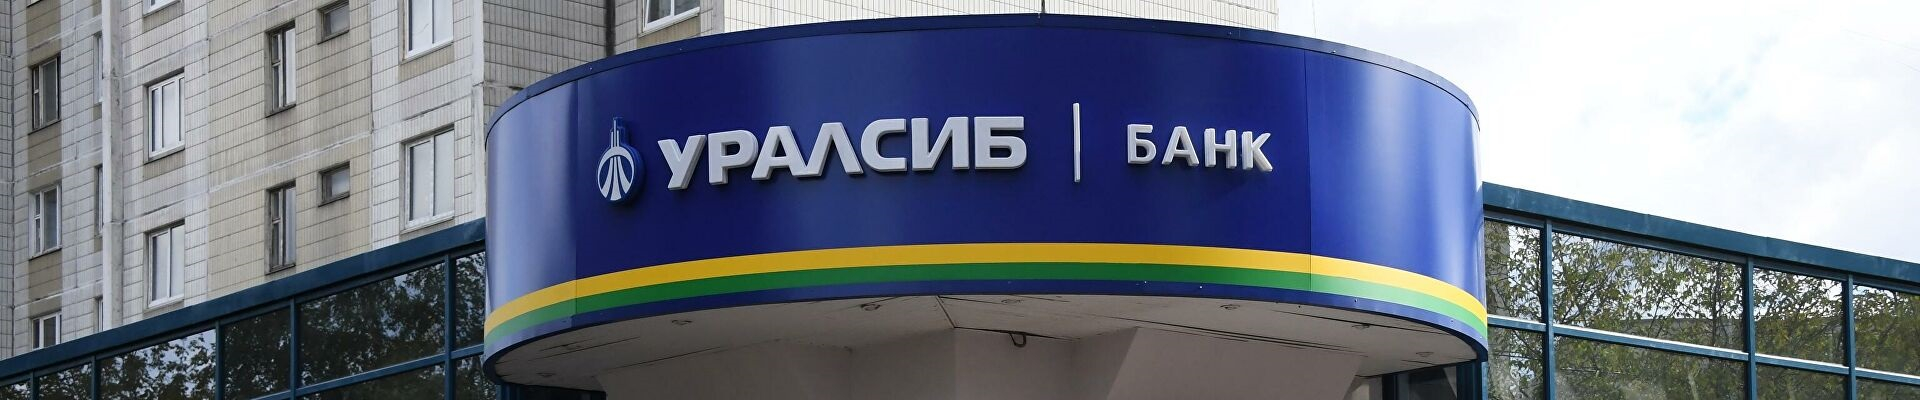 Рейтинговое российское агентство, базирующееся в городе Москва, изменило рейтинг по кредитам банка «Уралсиб» до стабильного уровня